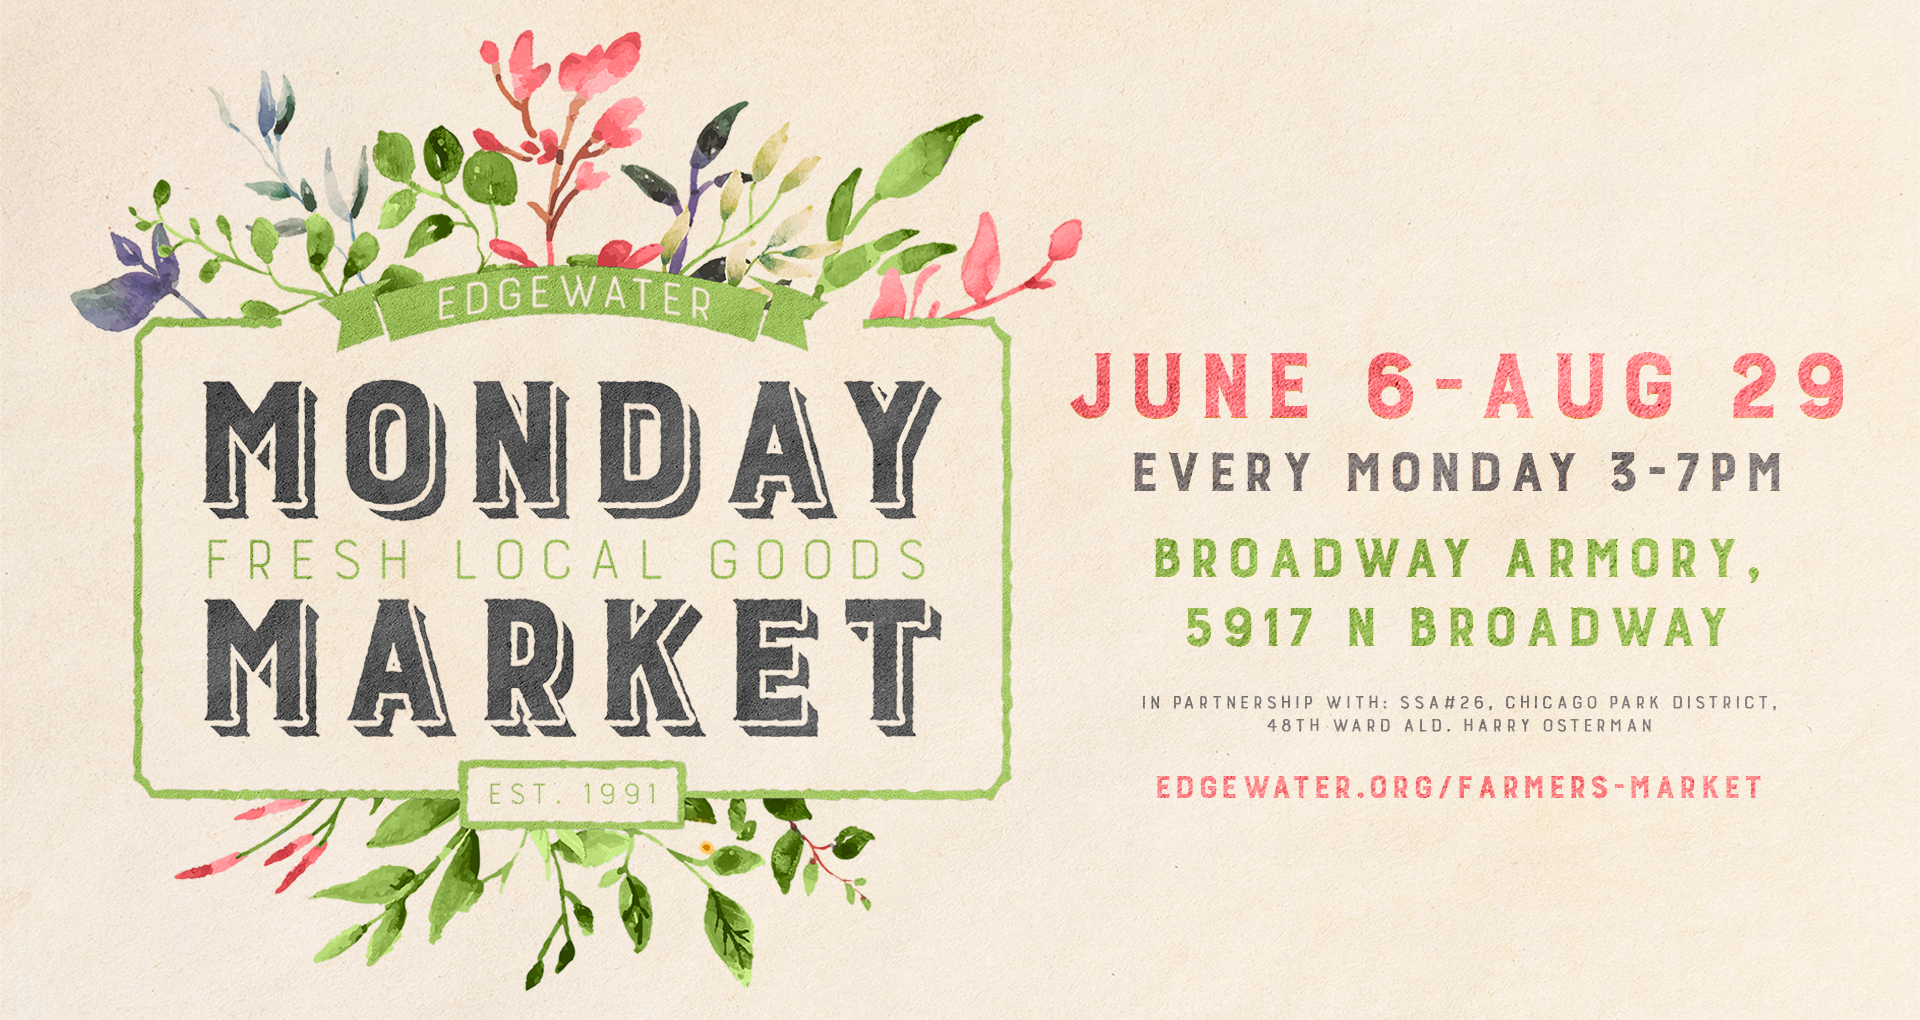 Edgewater’s Monday Market